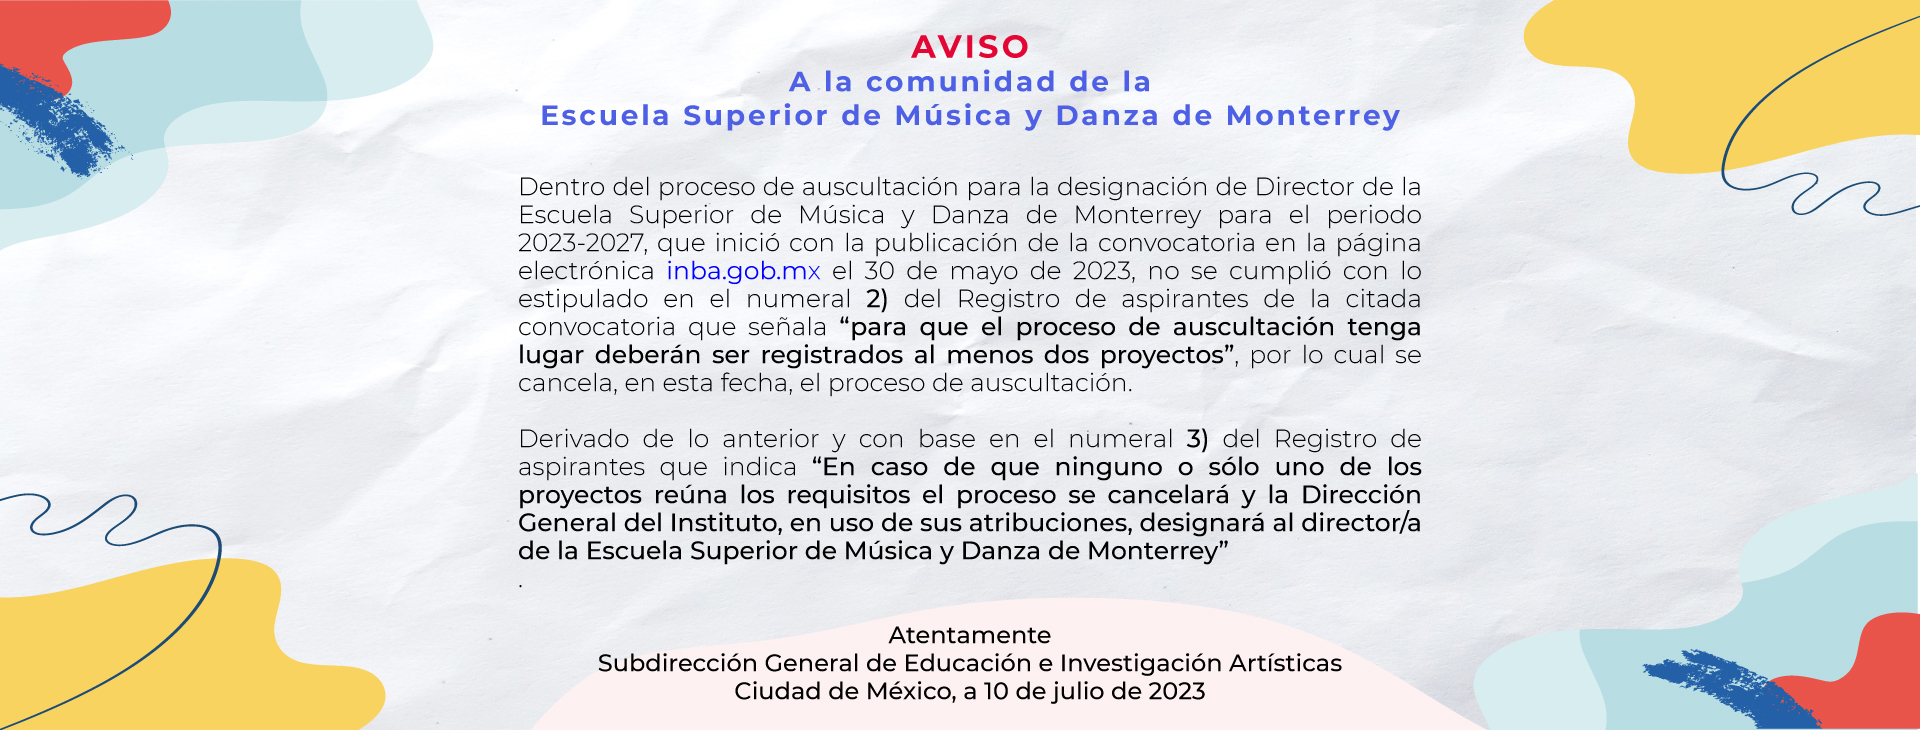 Proceso de auscultación Escuela Superior de Música y Danza de Monterrey